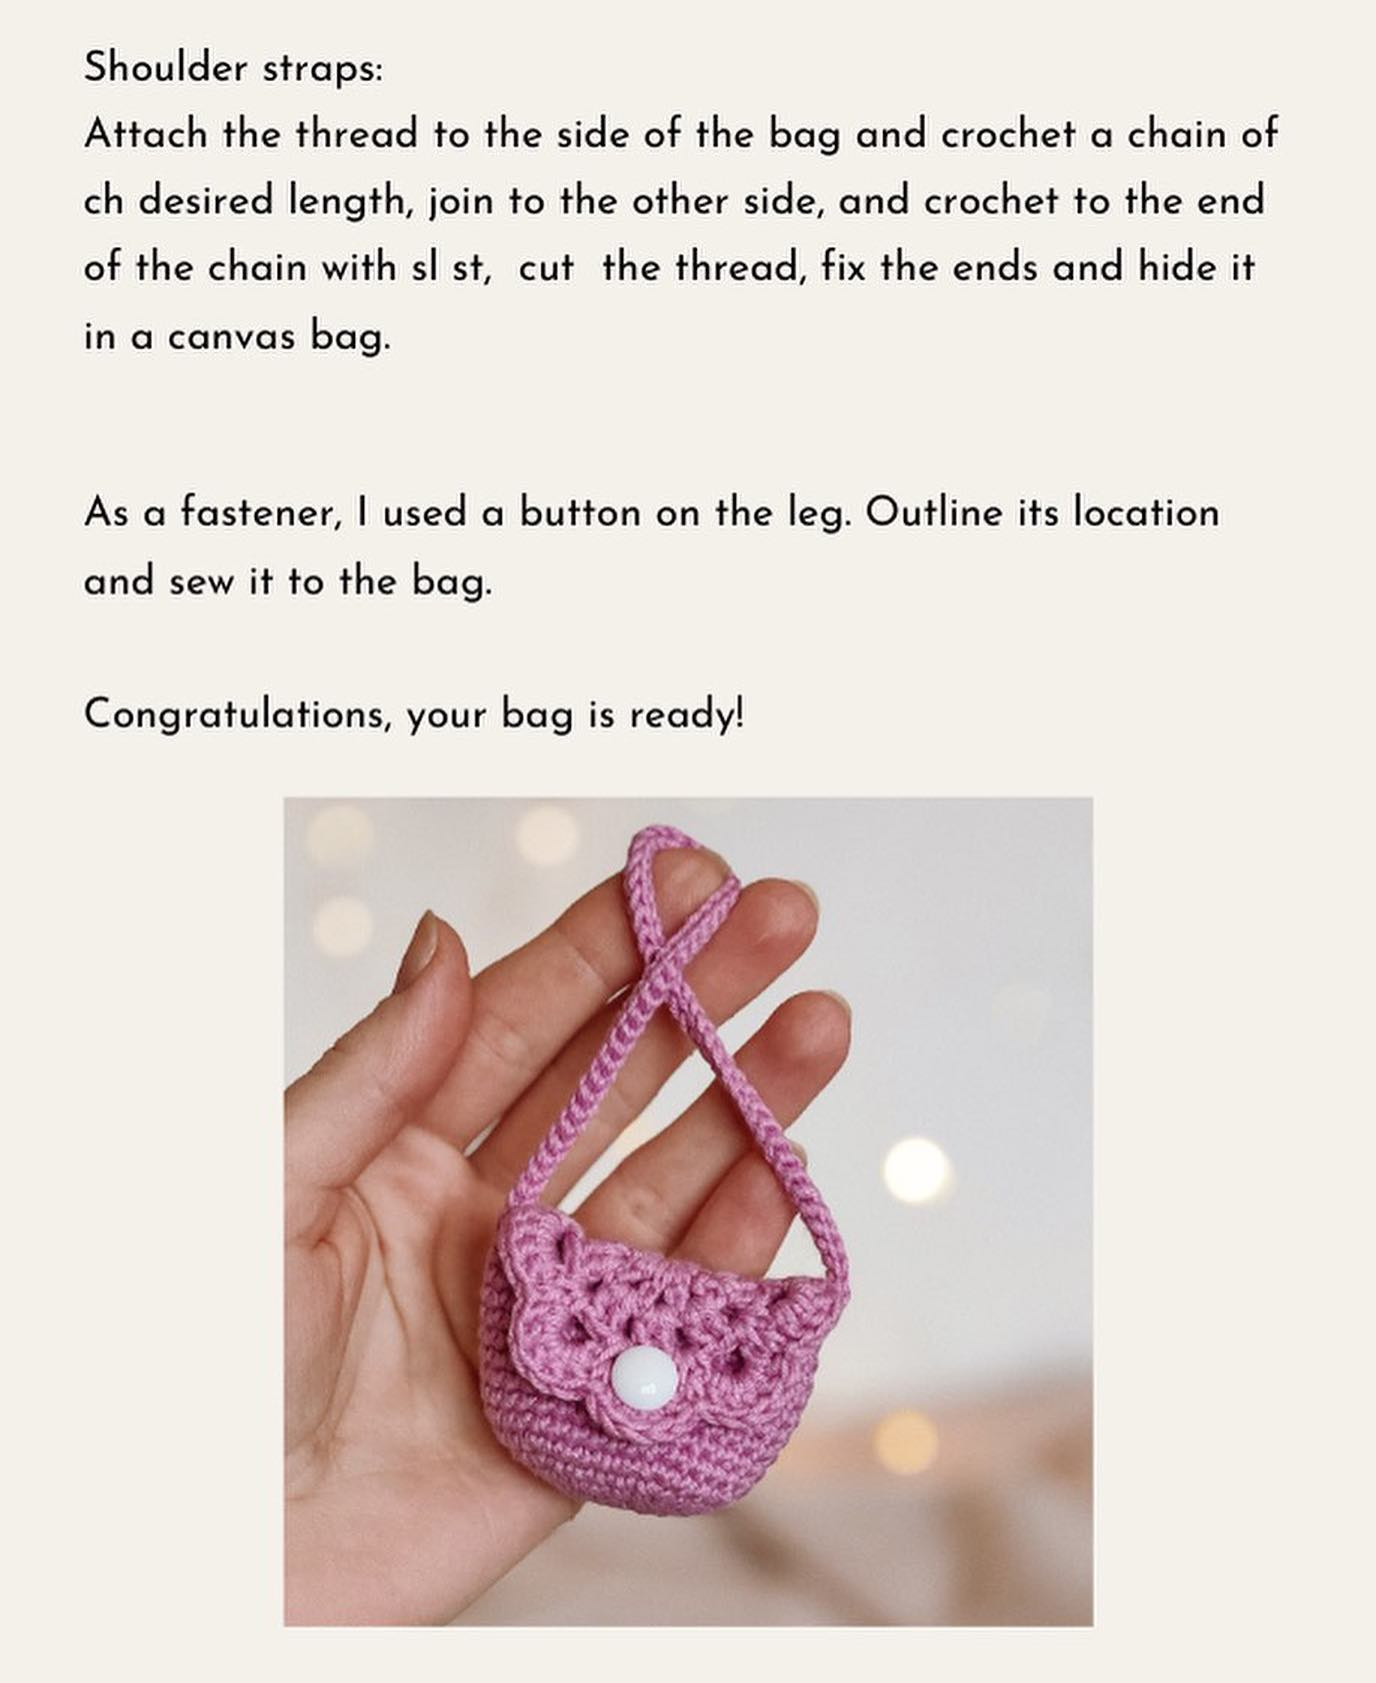 Pink handbag crochet pattern for dolls